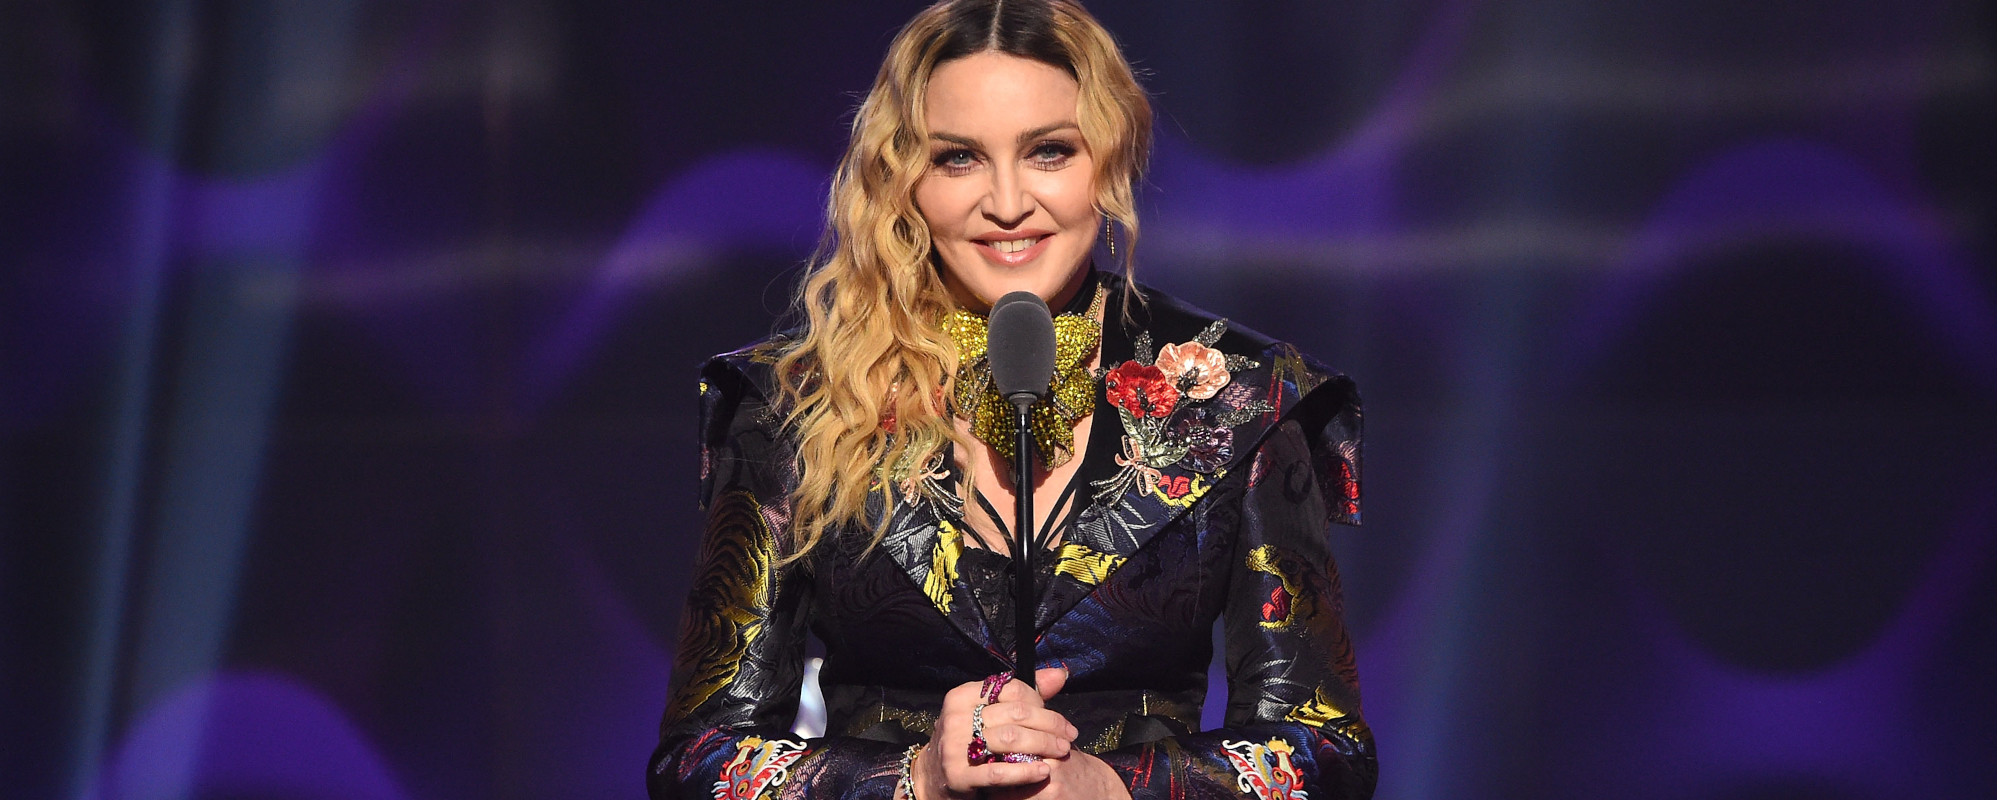 Madonna Apologizes to Toronto Crowd After "Hello, Boston" Flub